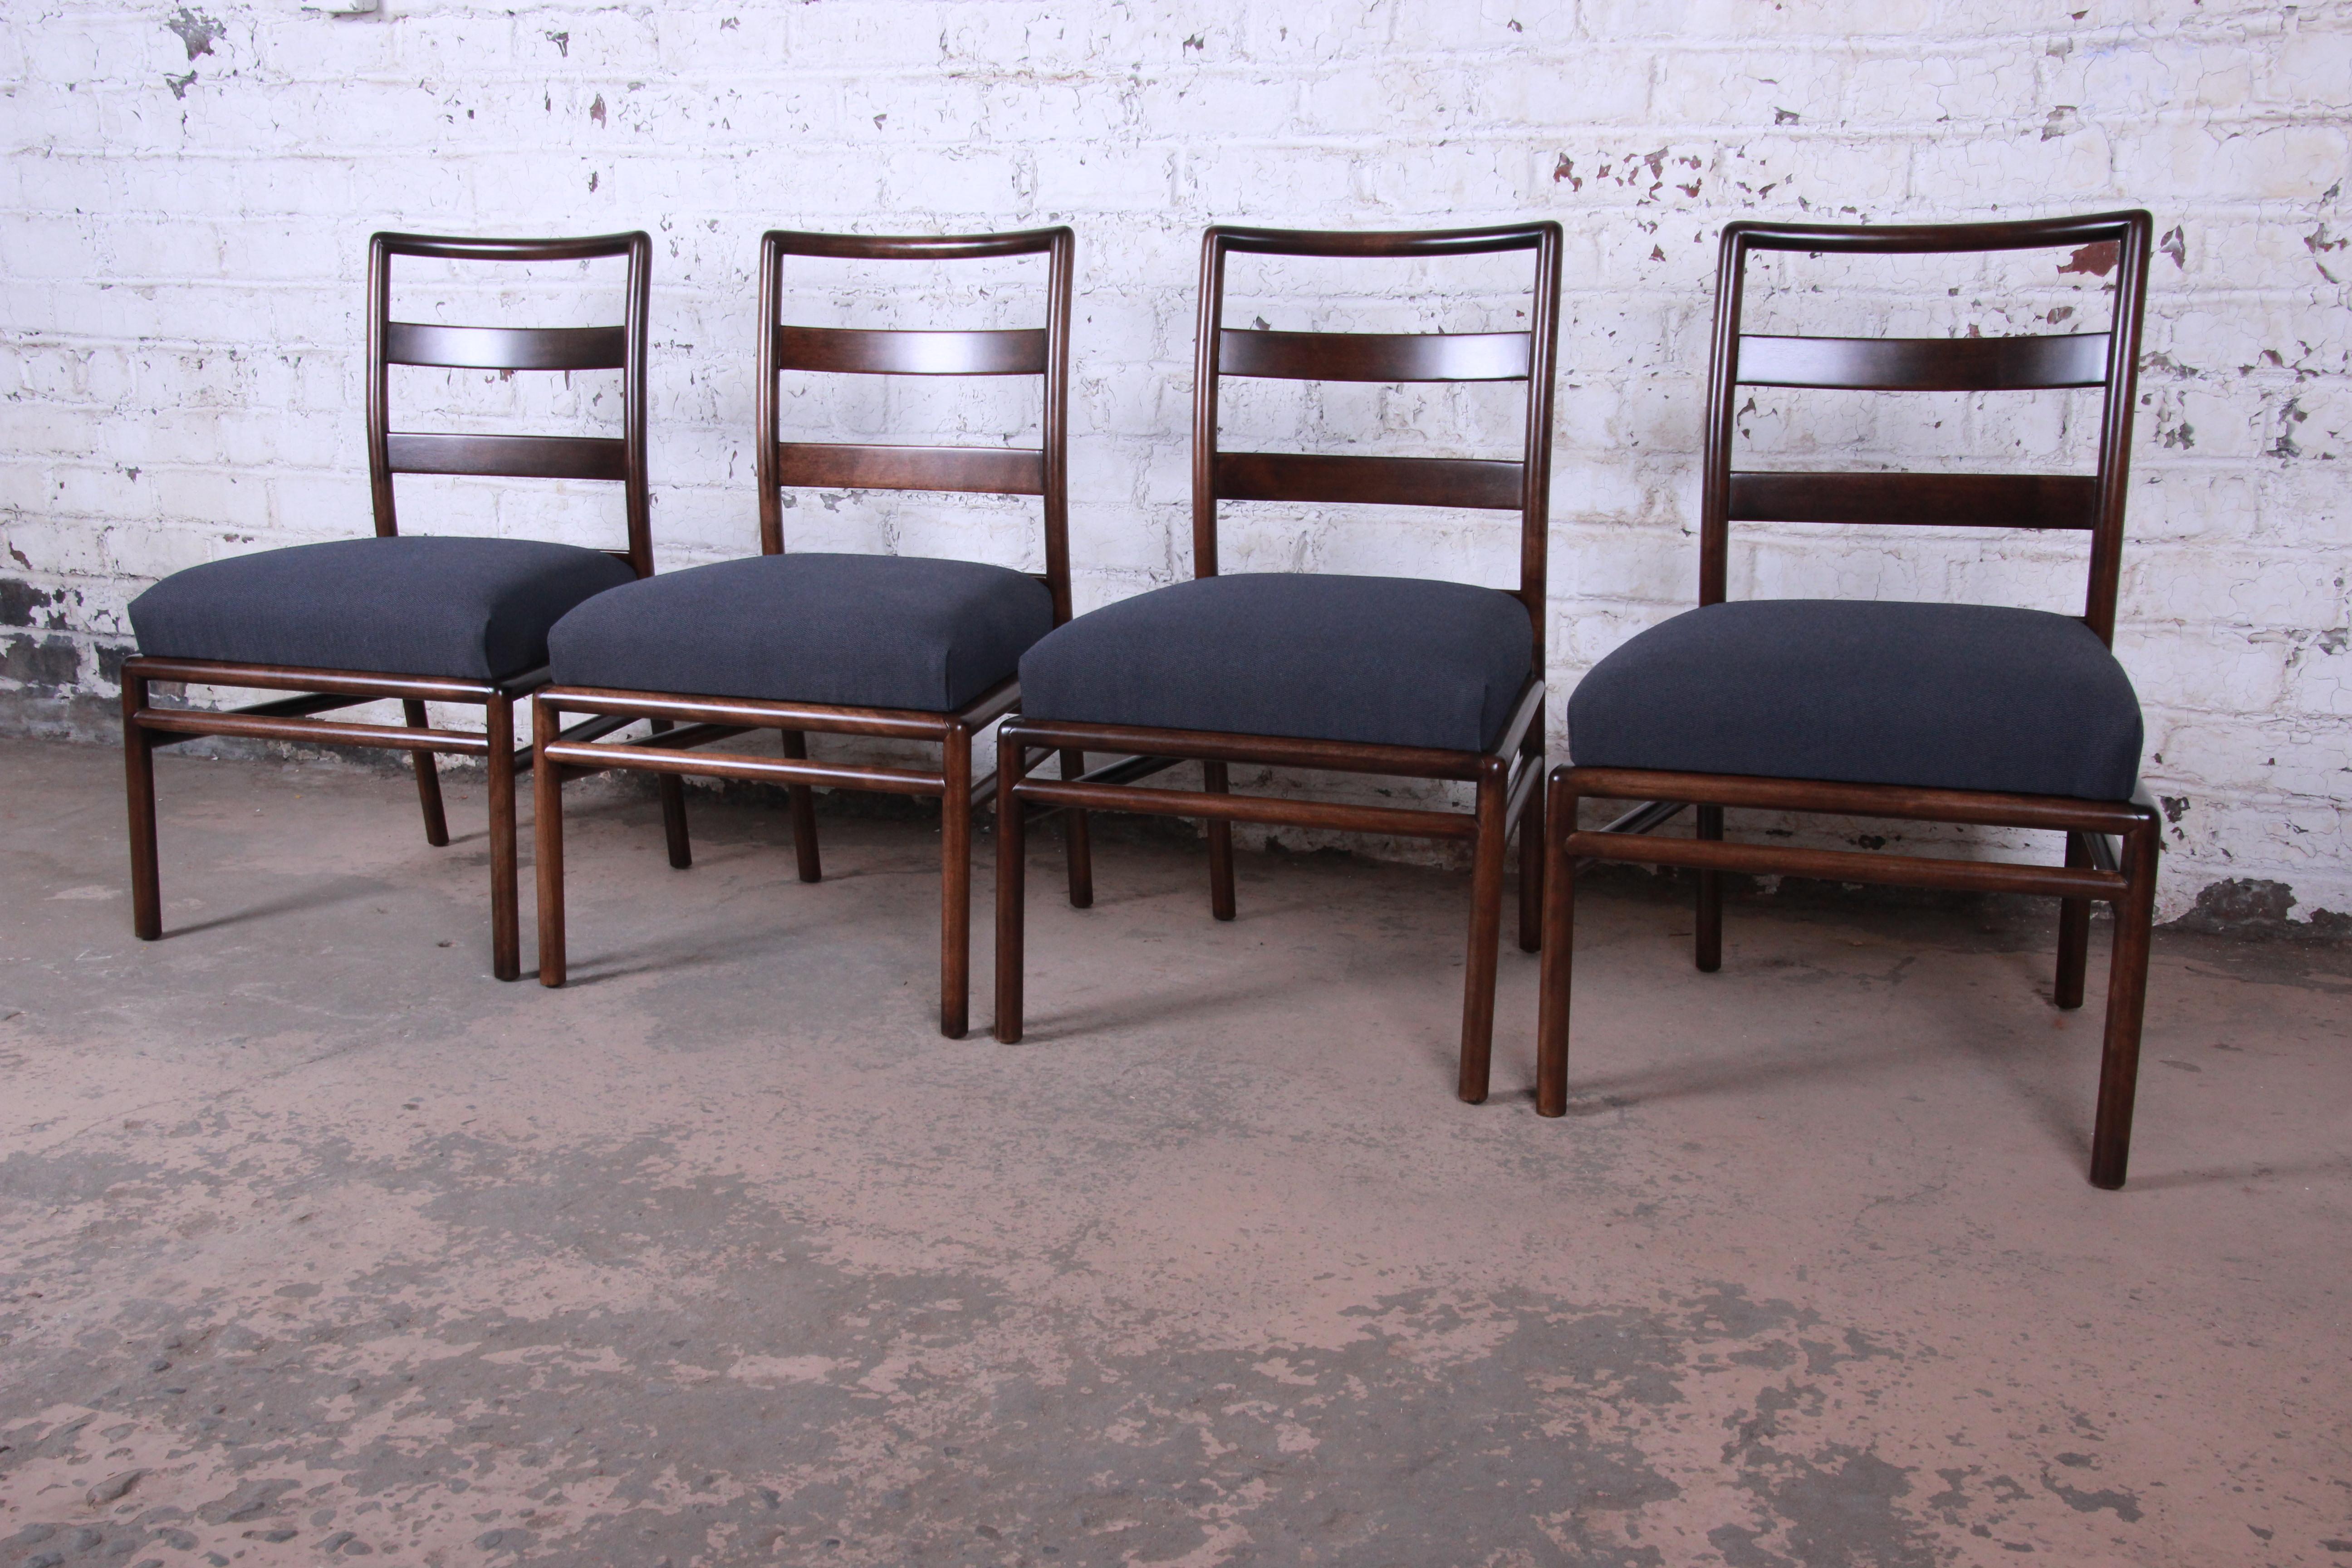 Upholstery T.H. Robsjohn-Gibbings for Widdicomb Mid-Century Modern Dining Chairs, Set of 6